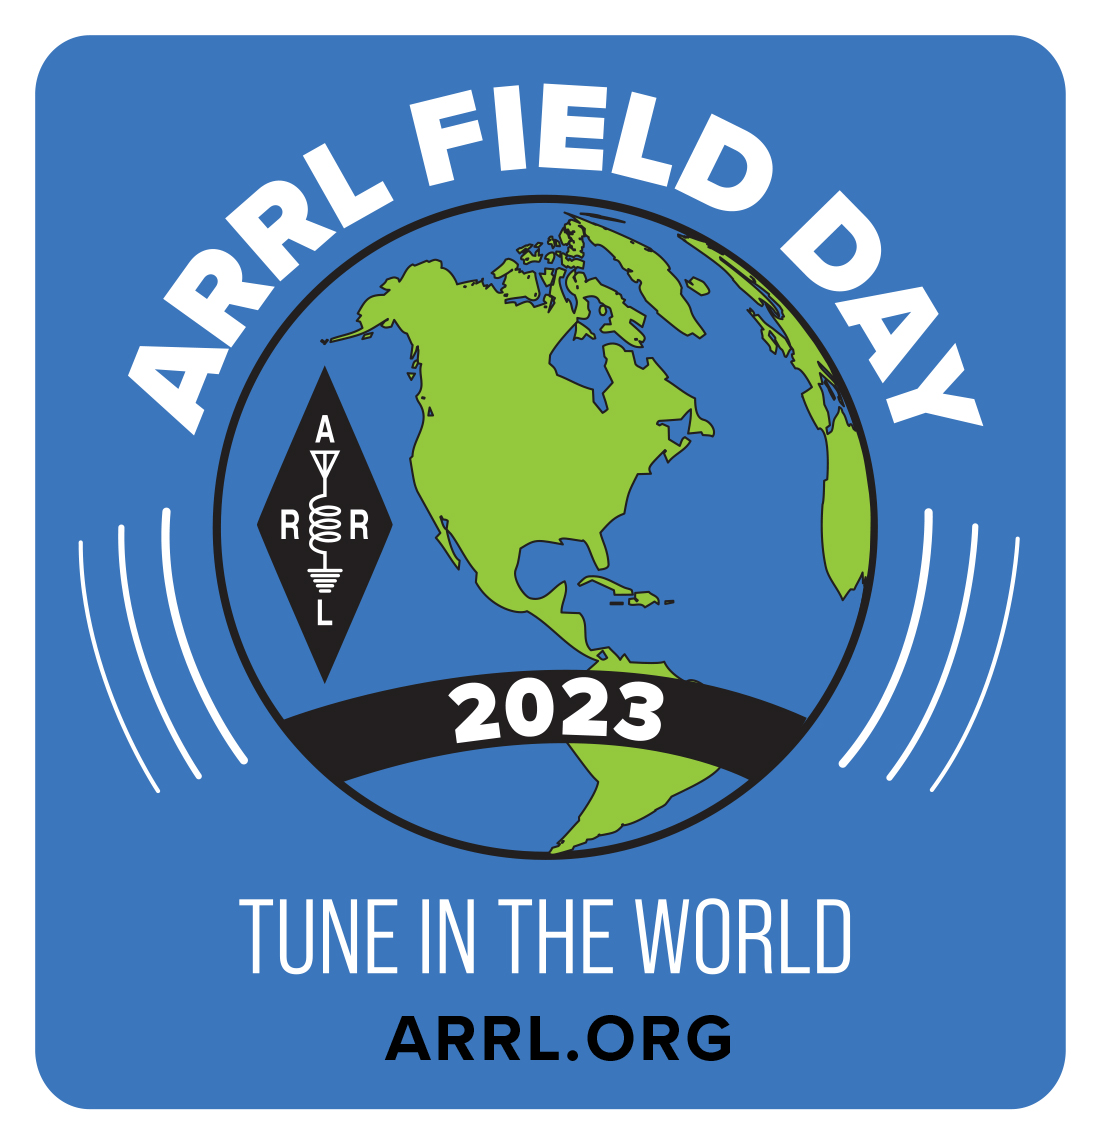 ARRL Field Day 